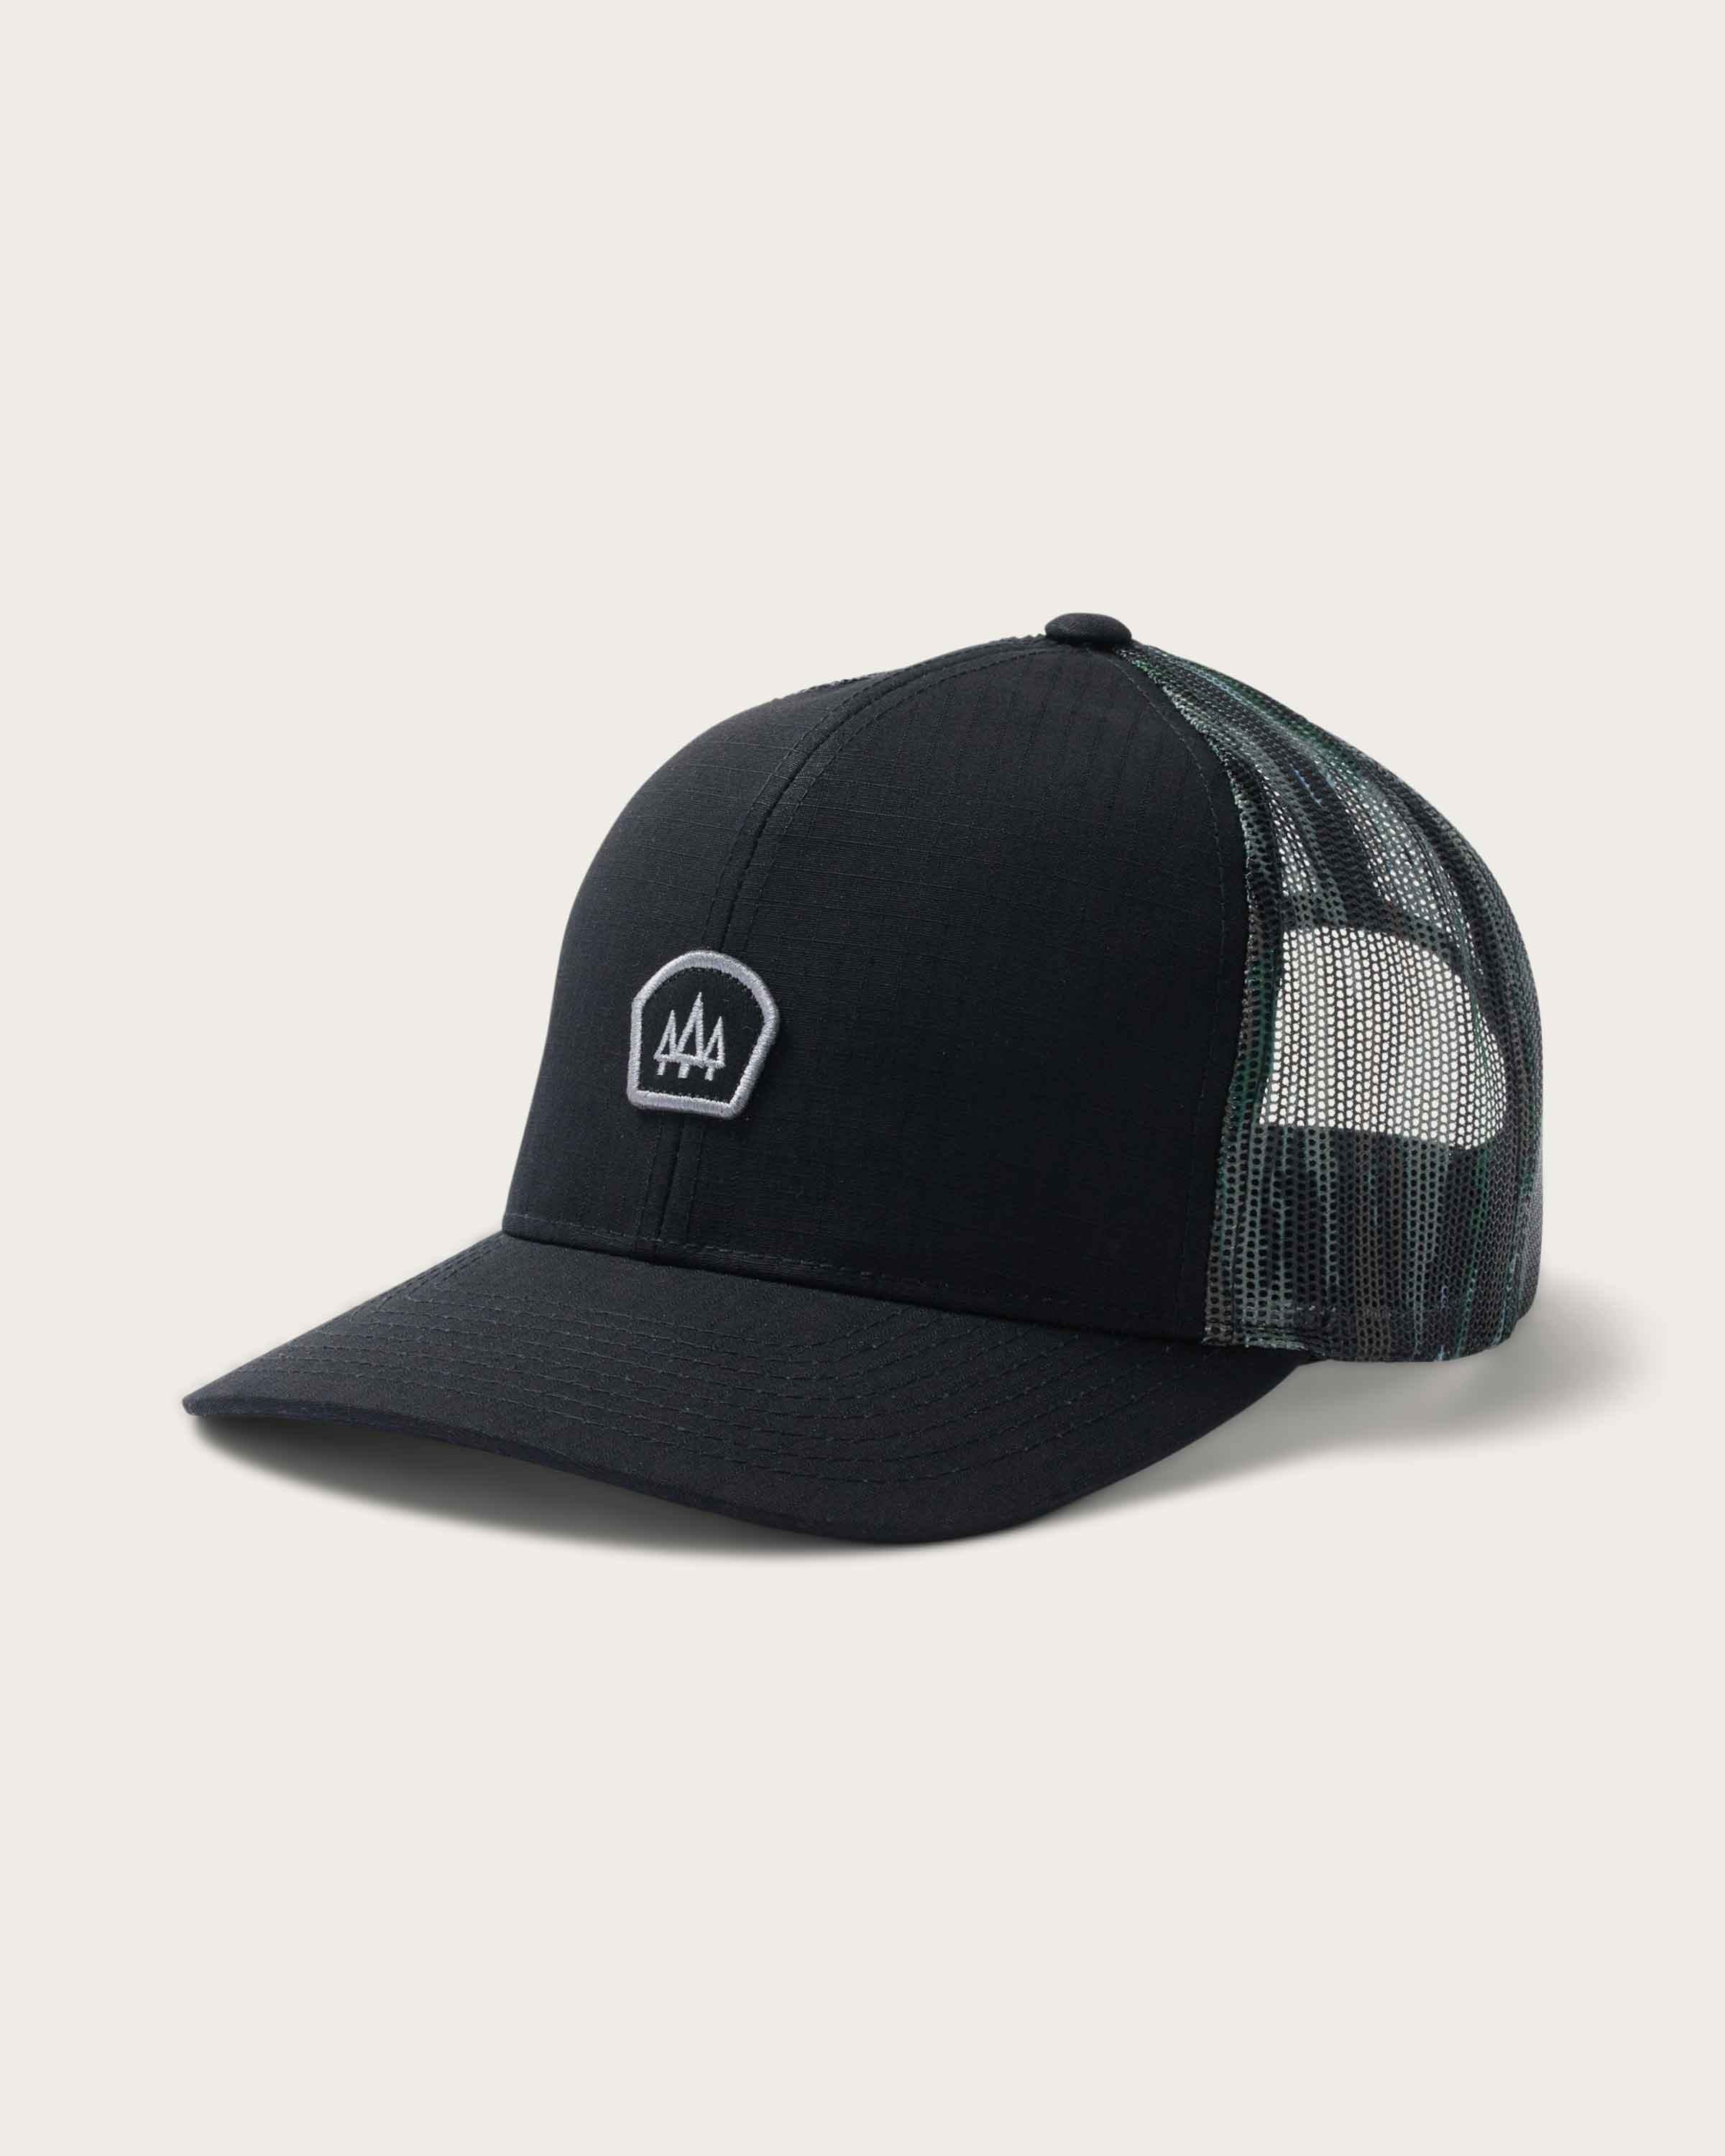 Shop Realtree Men's Original Camo Logo Hat at